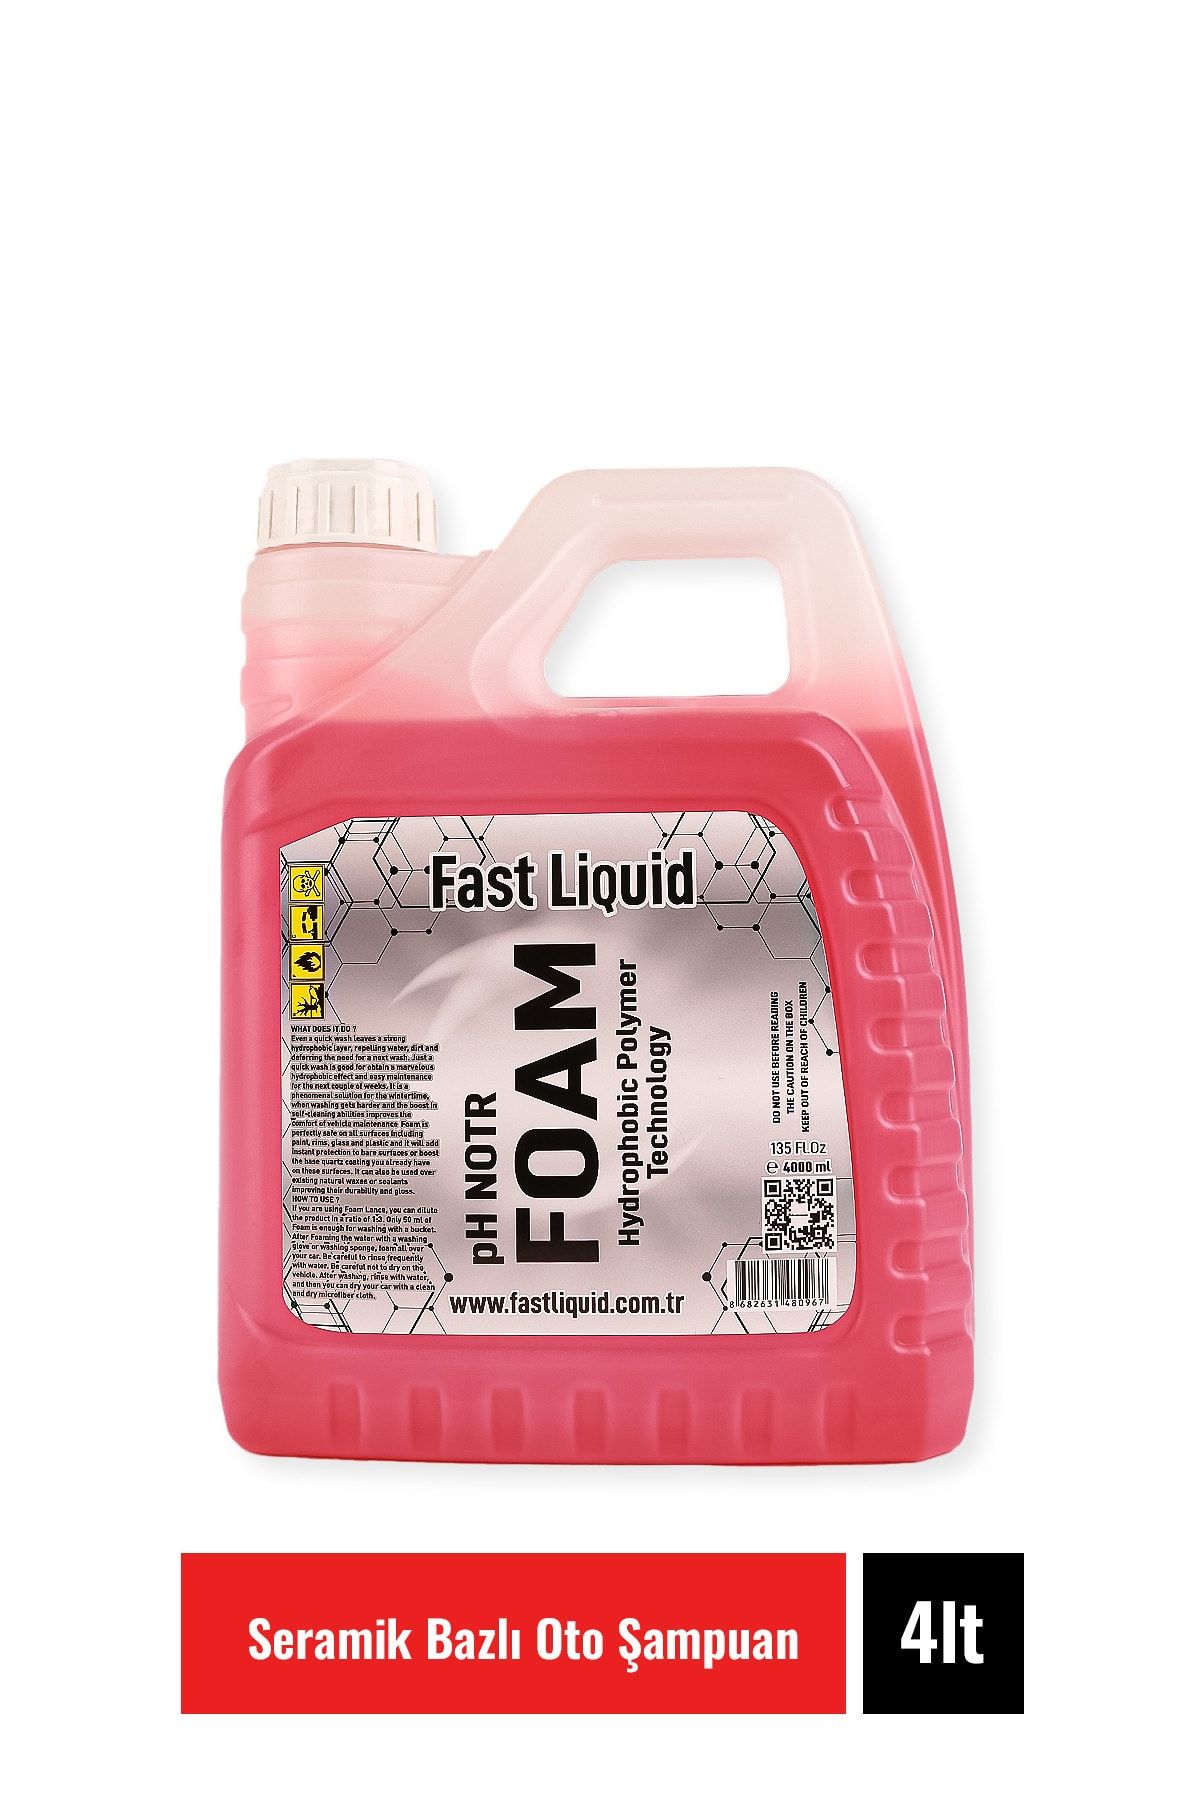 Fast Liquid Oto Şampuan, Cilalı Yüksek Su Iticili, Ph Notr Foam 4 Lt Seramik Bazlı